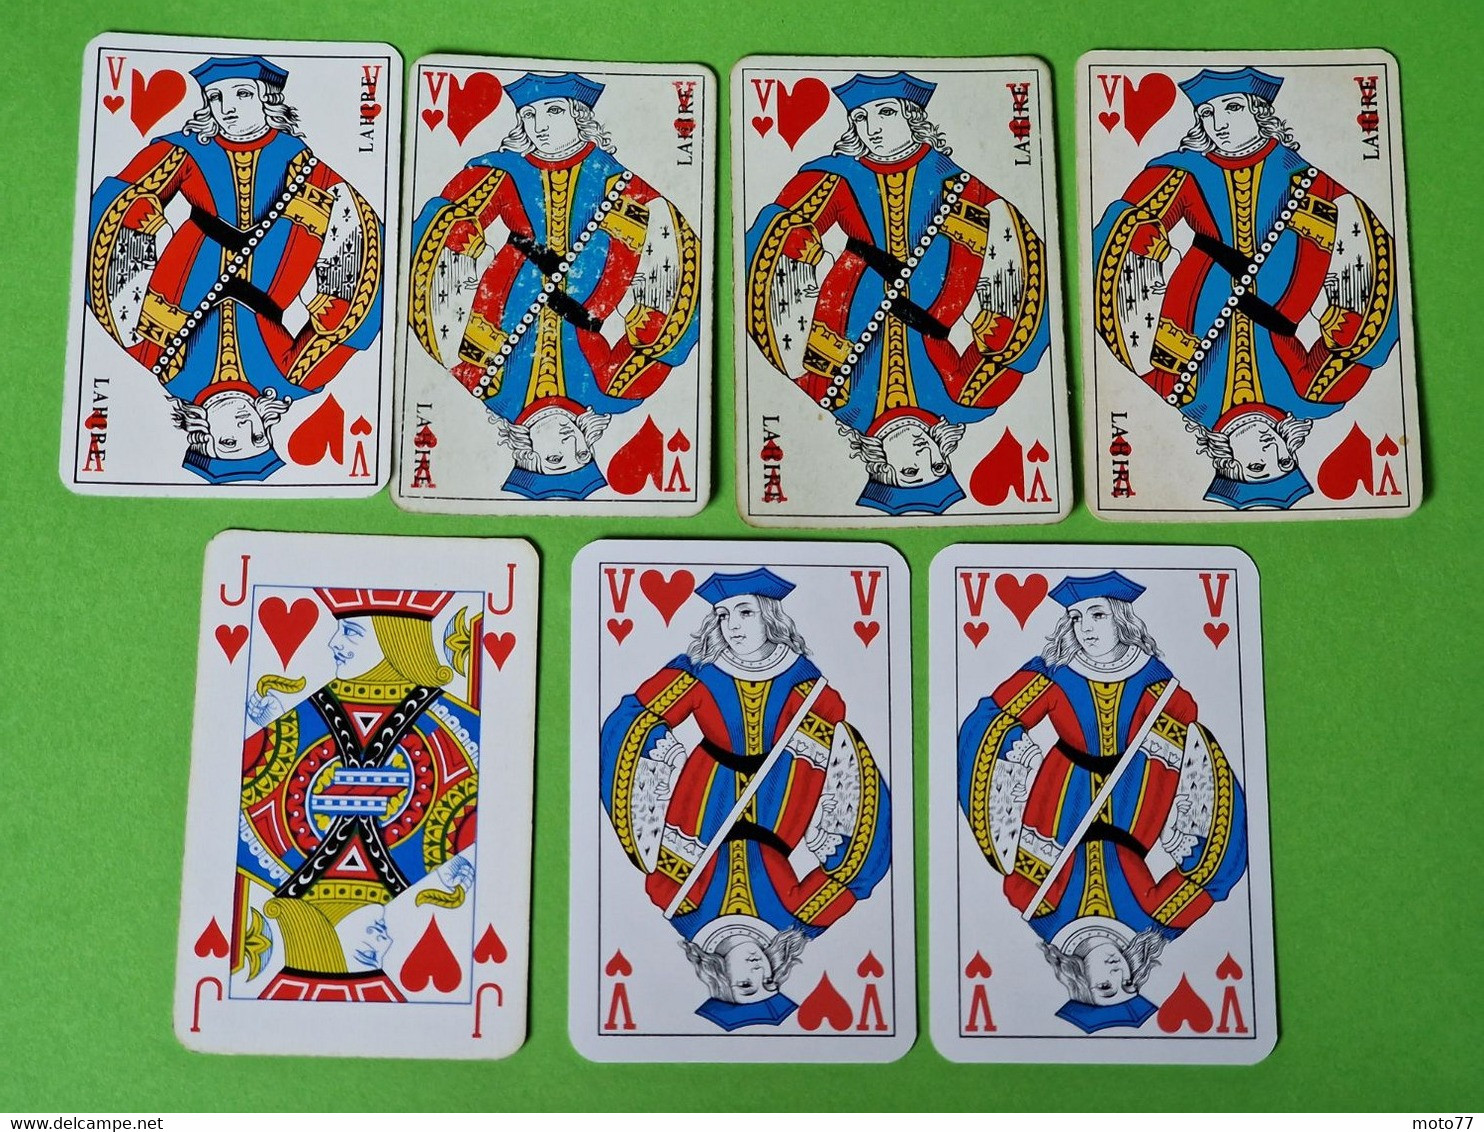 Lot 7 Cartes à Jouer - VALET De CŒUR - Dos Bleu Et Rouge - Pub L'UNION Reims, ABOISIF, GPA, M&M, ROCHEX - Vers 1990/2000 - 32 Cards